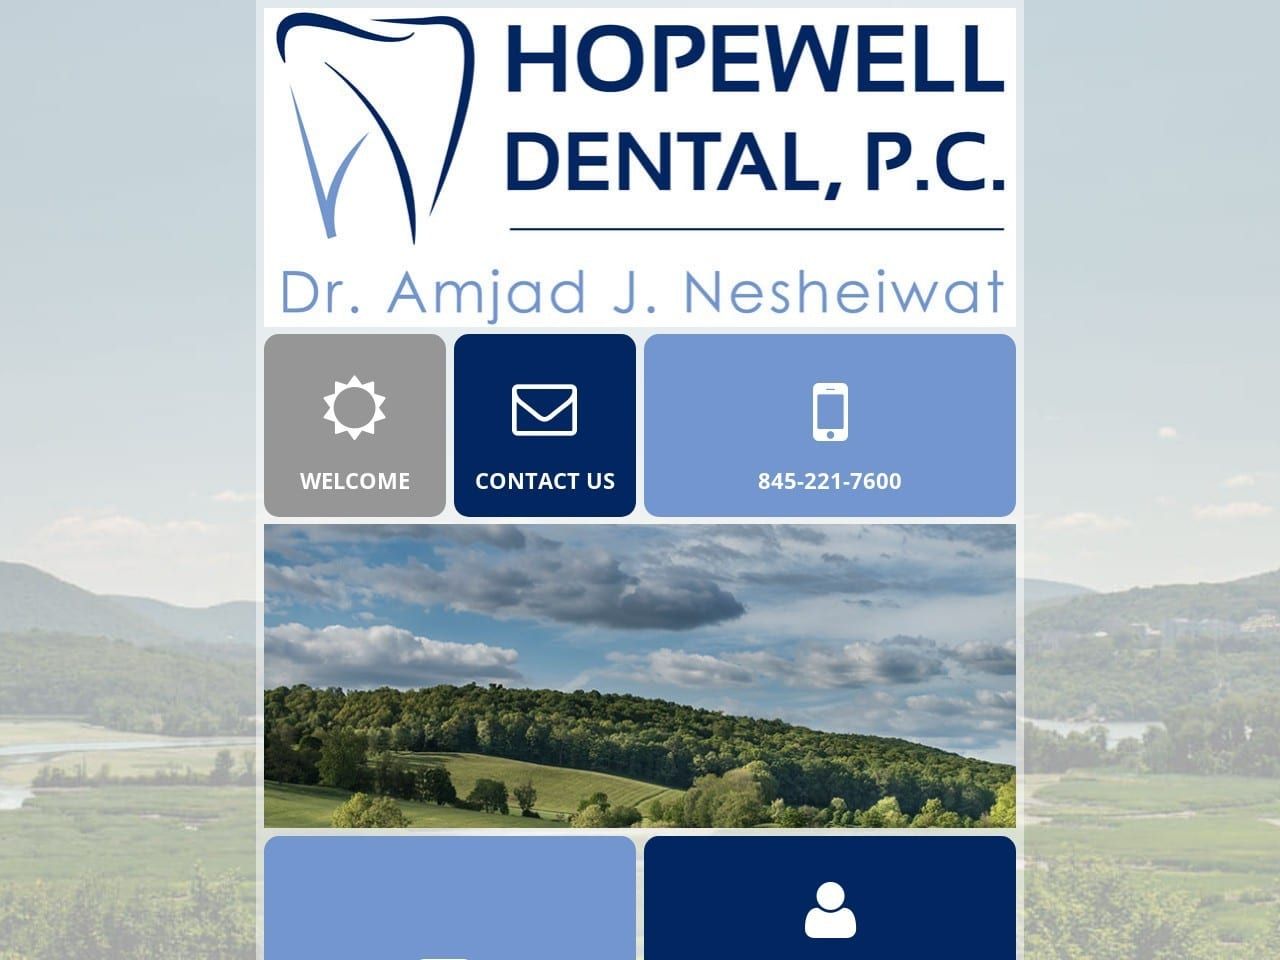 Hopewell Dental PC Website Screenshot from hopewelldentalpc.com